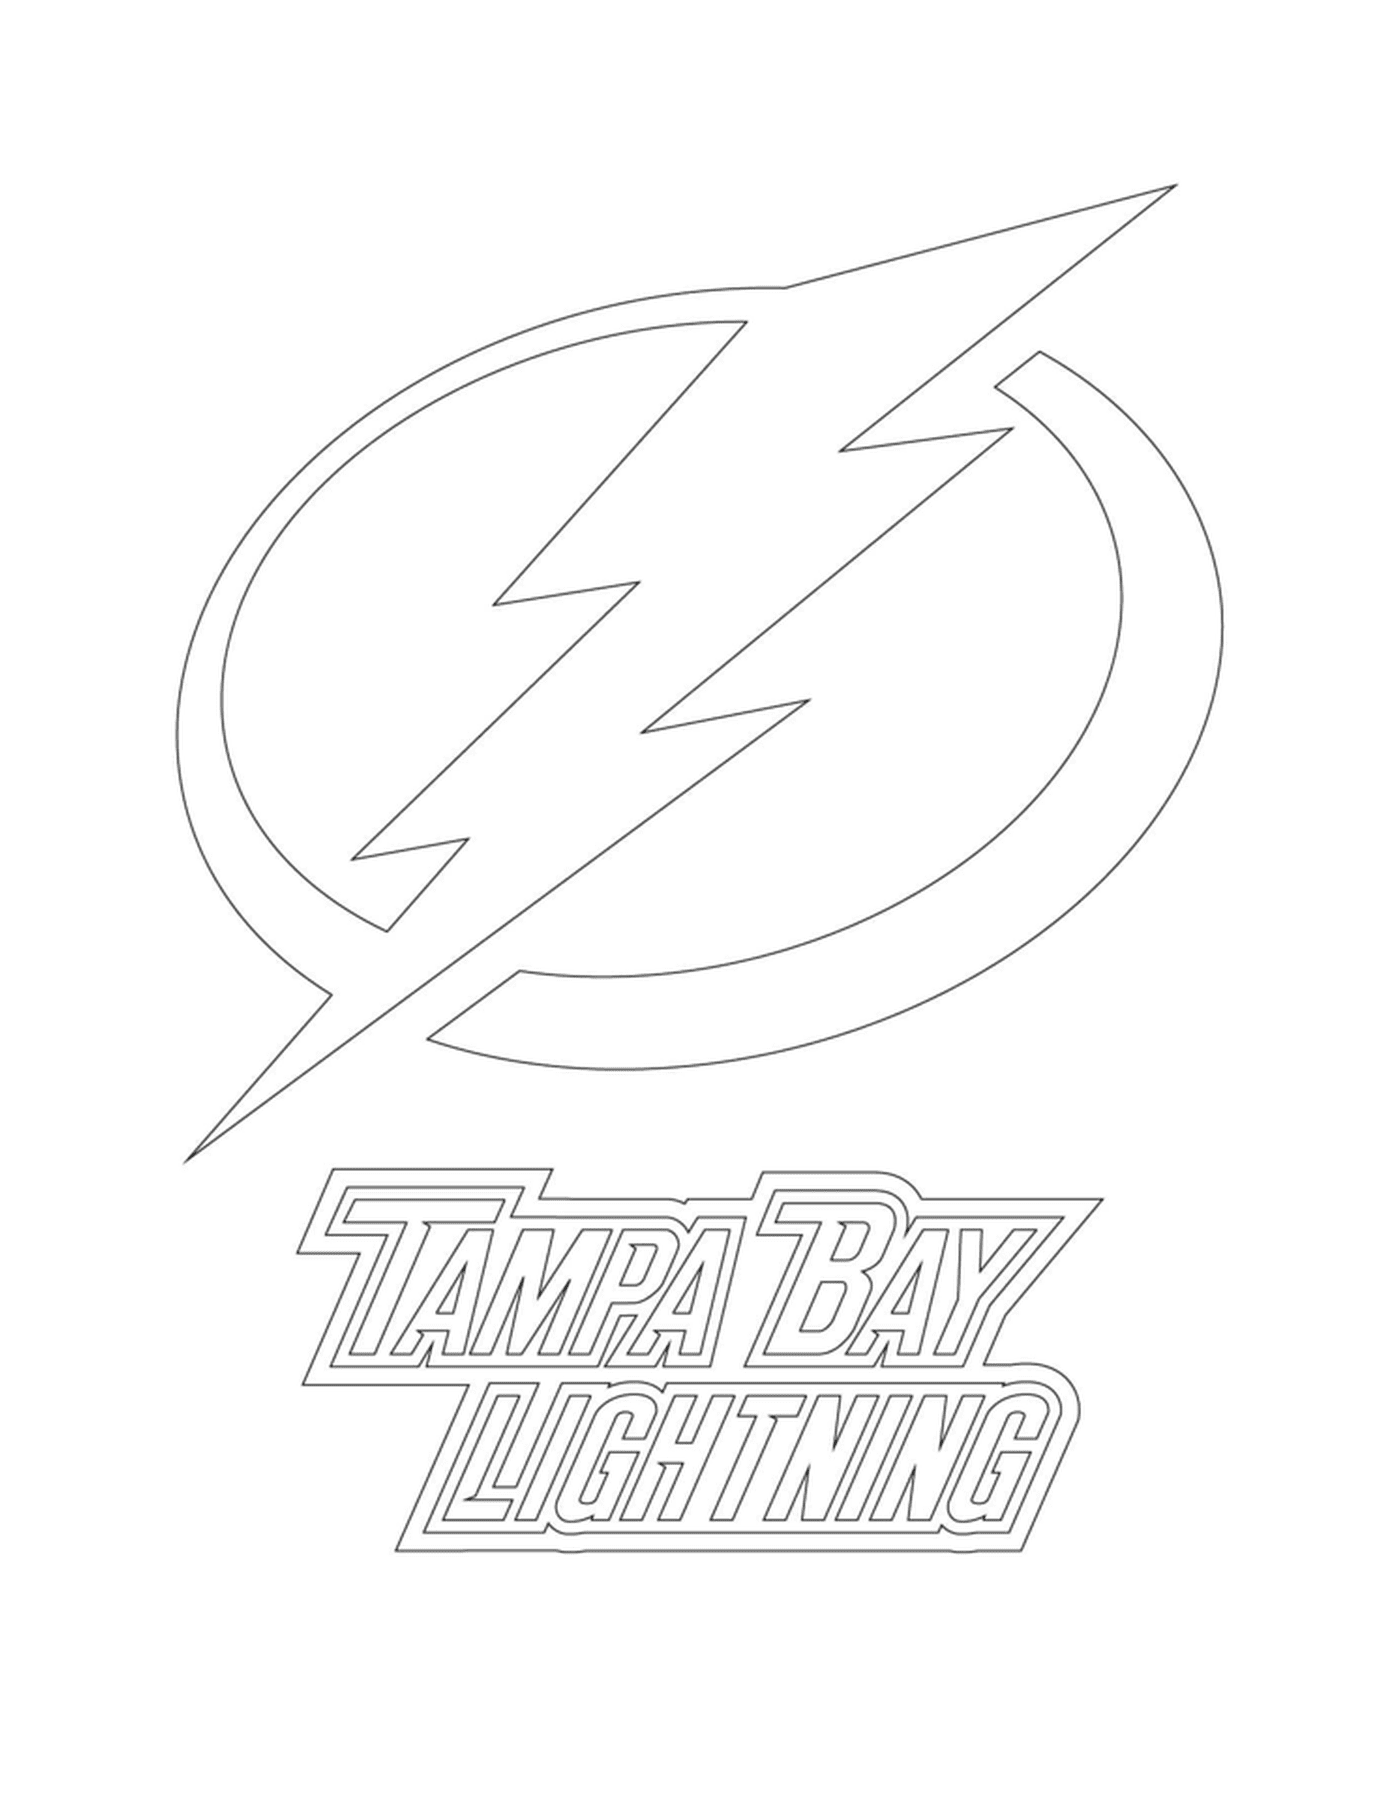  Rio de Janeiro Lightning Logo 